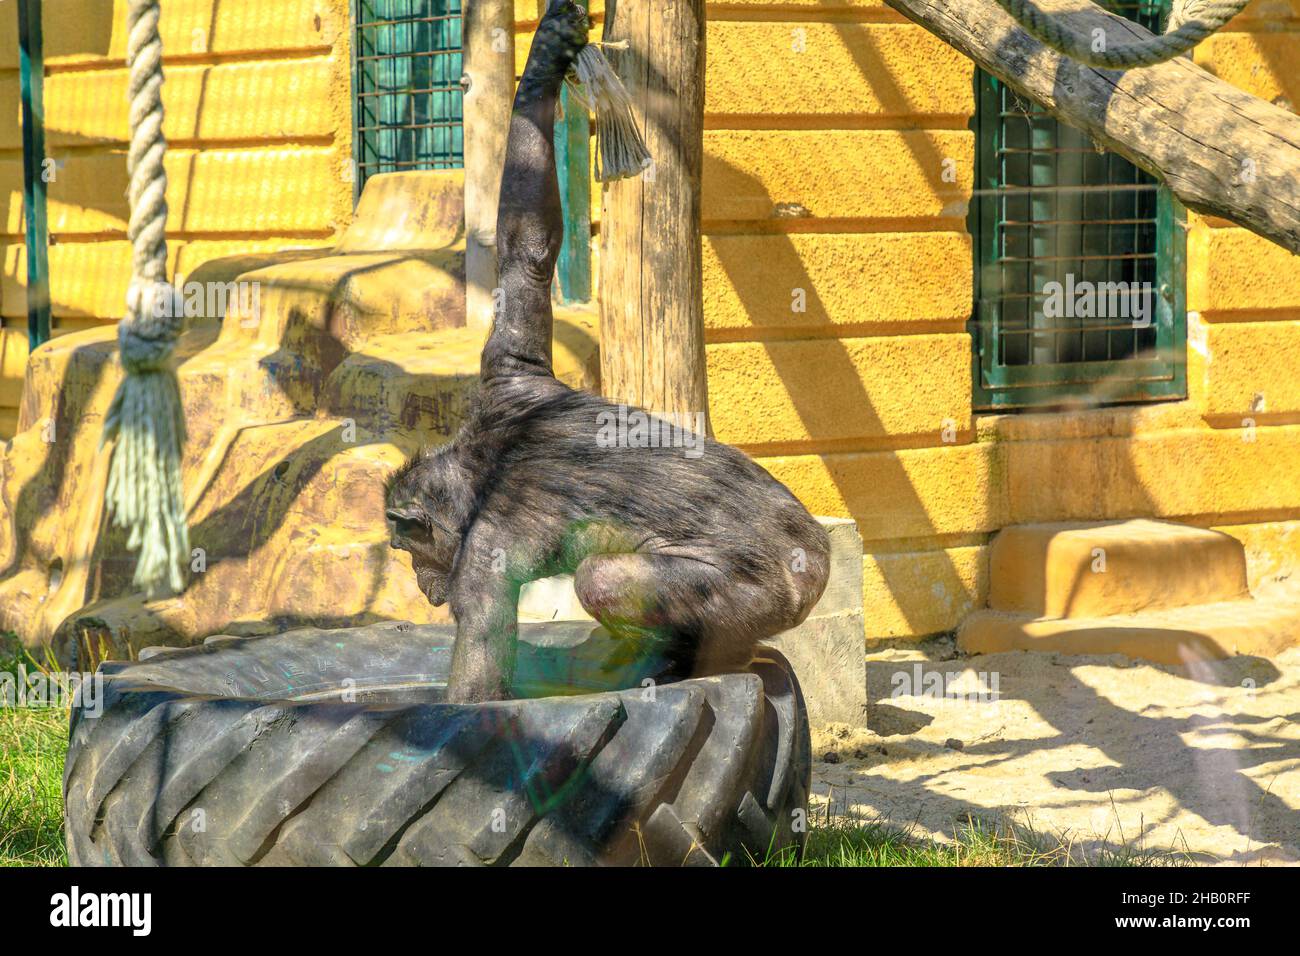 Zagabria , Croatie, - août 2021: Grand chimpanzee commun manger dans le parc Maksimir du zoo de Zagabria.Espèces de troglodytes panées. Banque D'Images